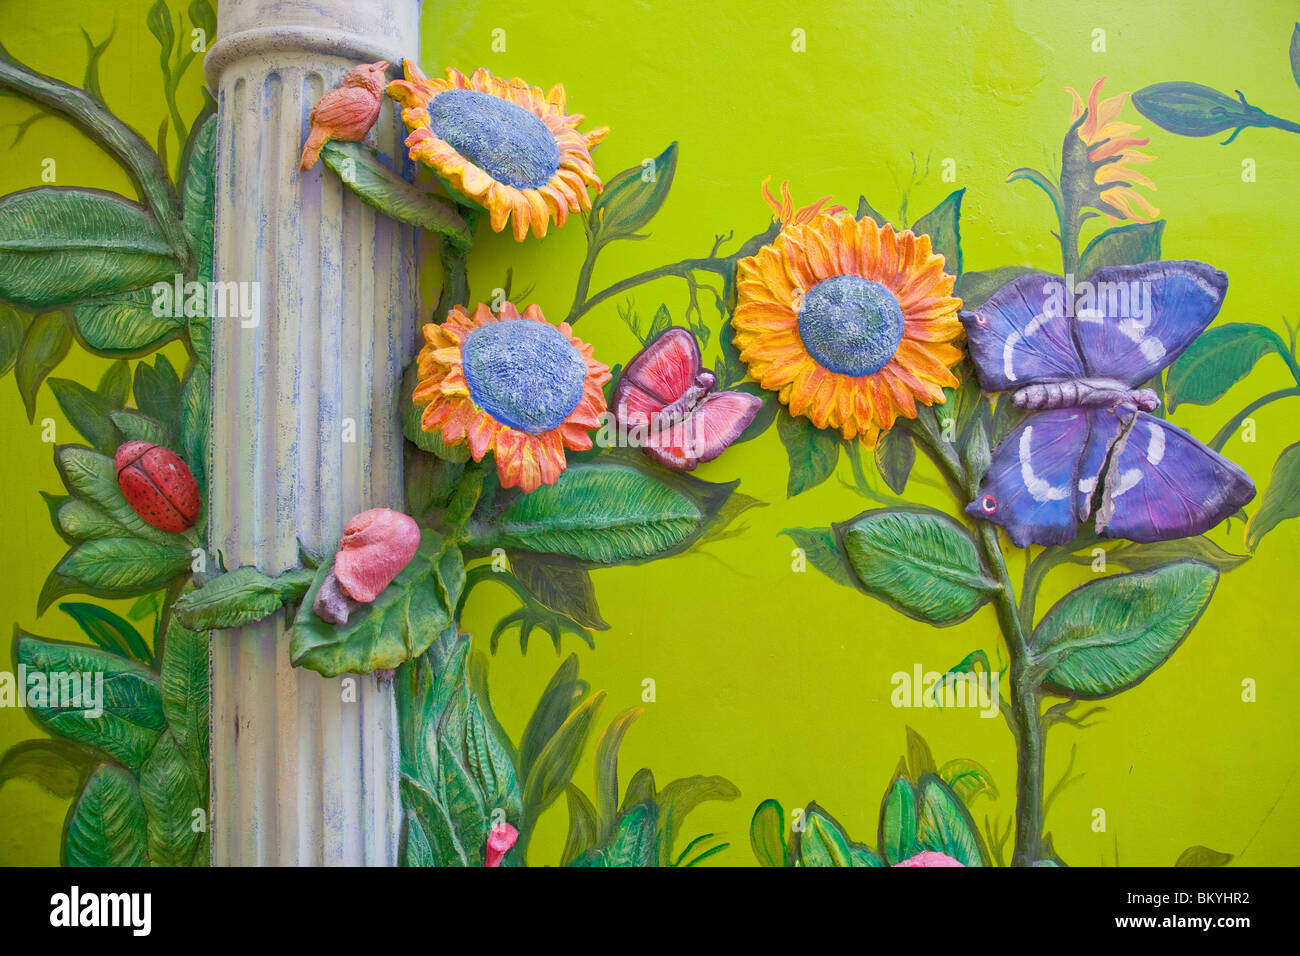 Decorativi di arte di strada e i murales sui lati degli edifici in Willemstad, Curacao, Antille olandesi. Foto Stock